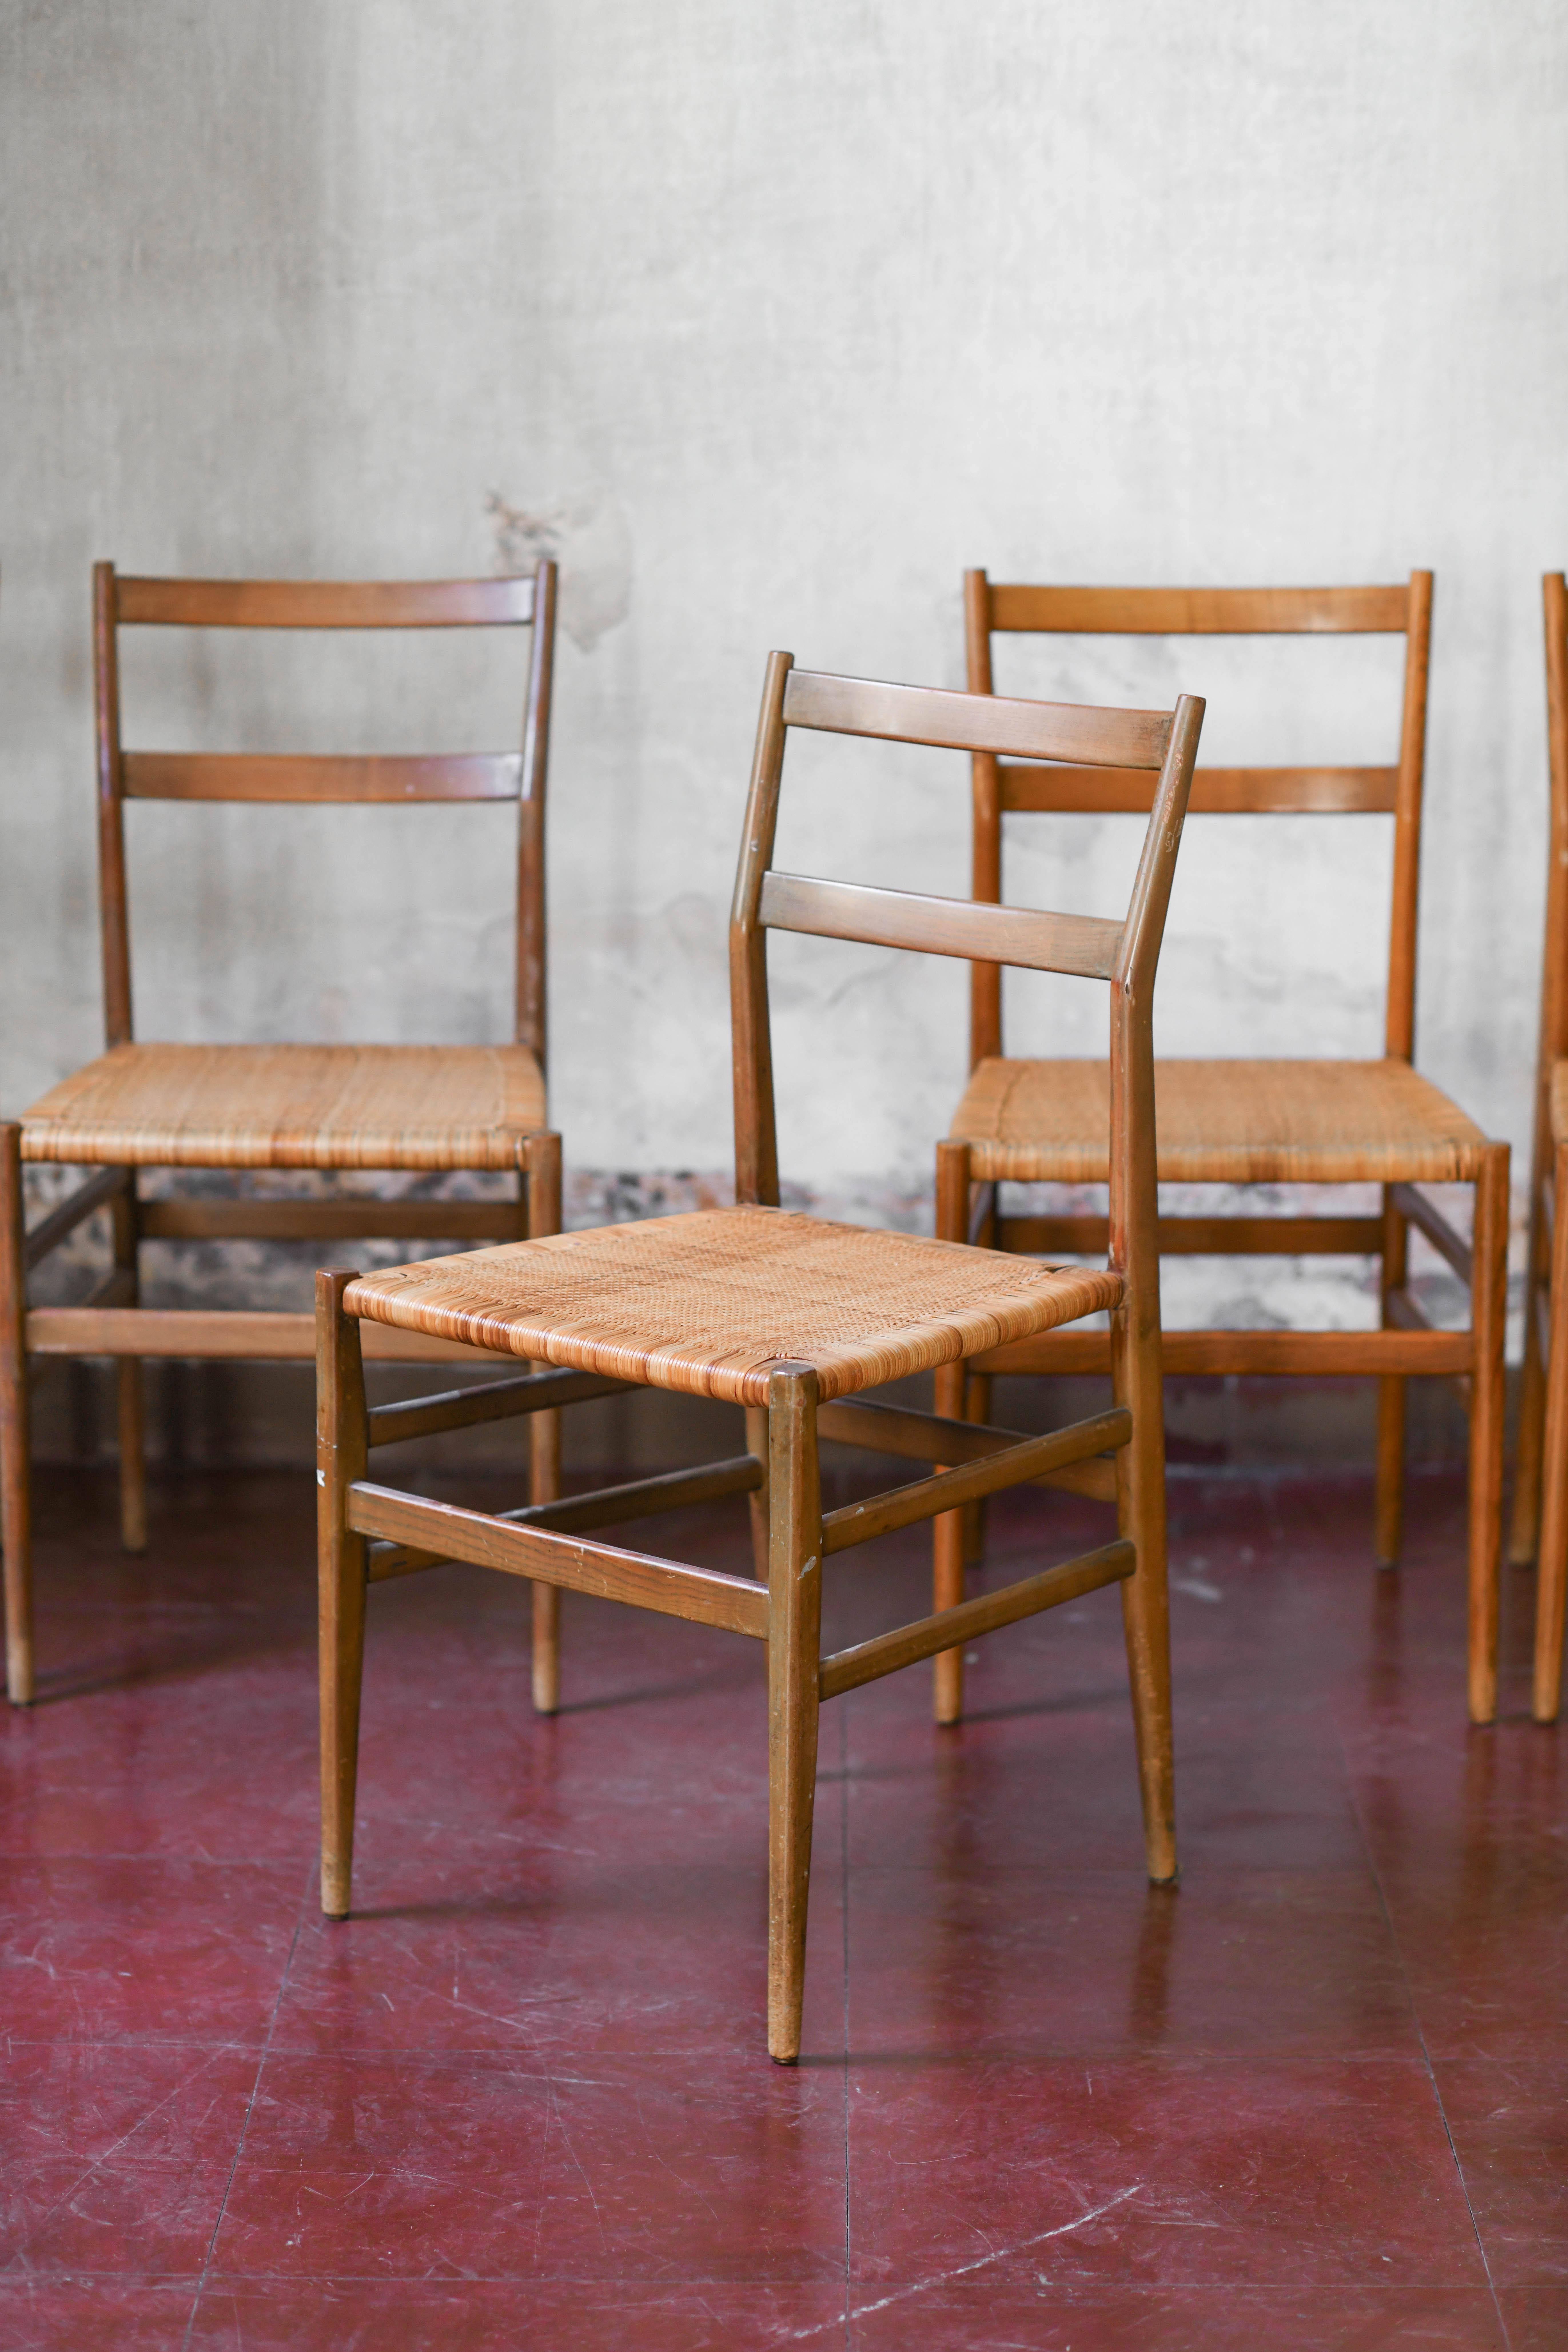 Italian Leggera chair by Gio Ponti – set of 7 pieces